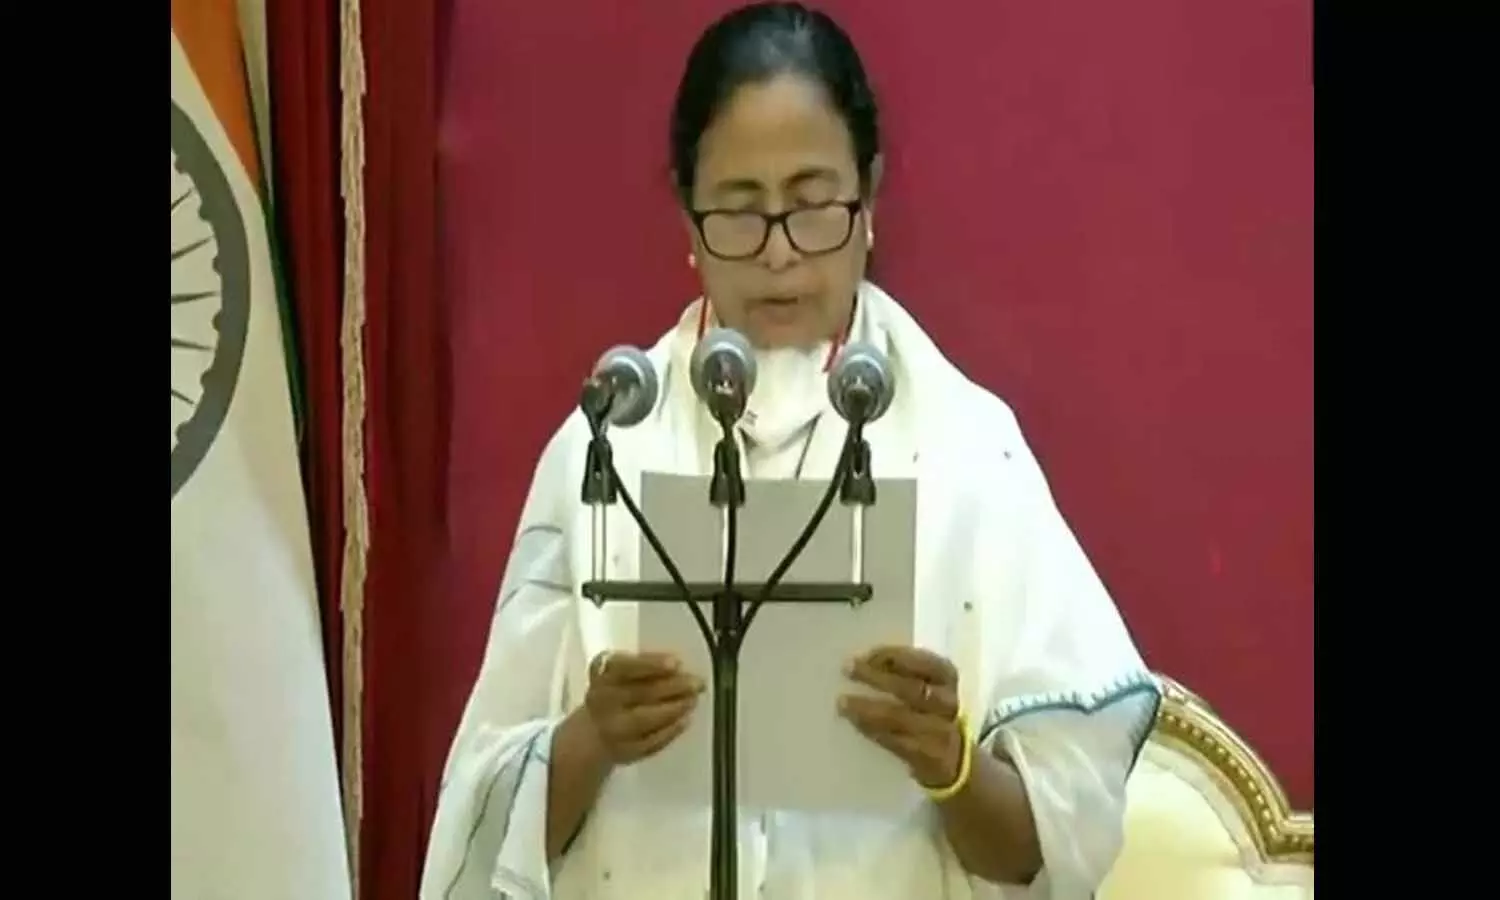 ममता बनर्जी ने ली बंगाल के मुख्यमंत्री पद की शपथ, तीसरी बार बनीं CM